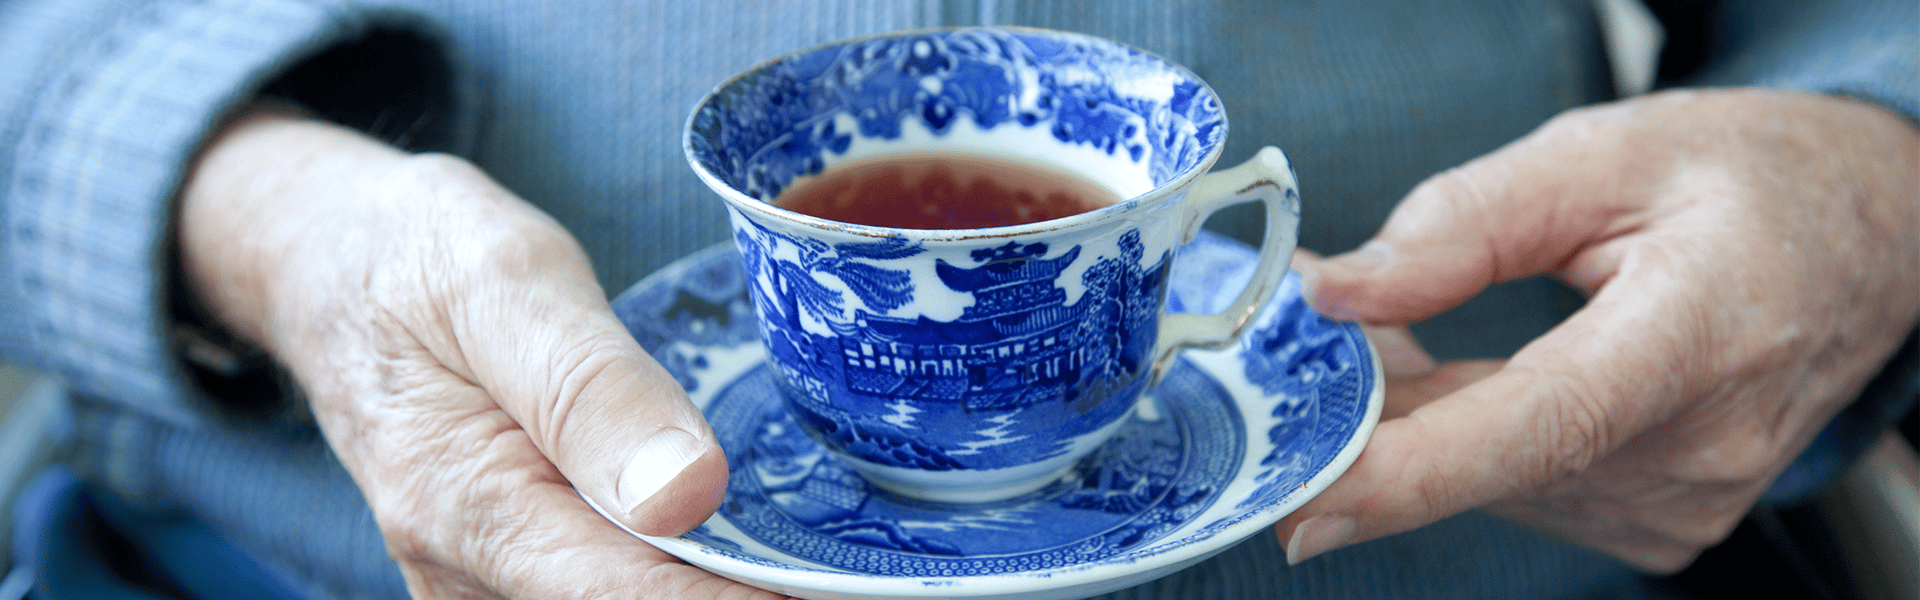 Tasse de thé dans un service en porcelaine chinois tenue entre les mains d'un client